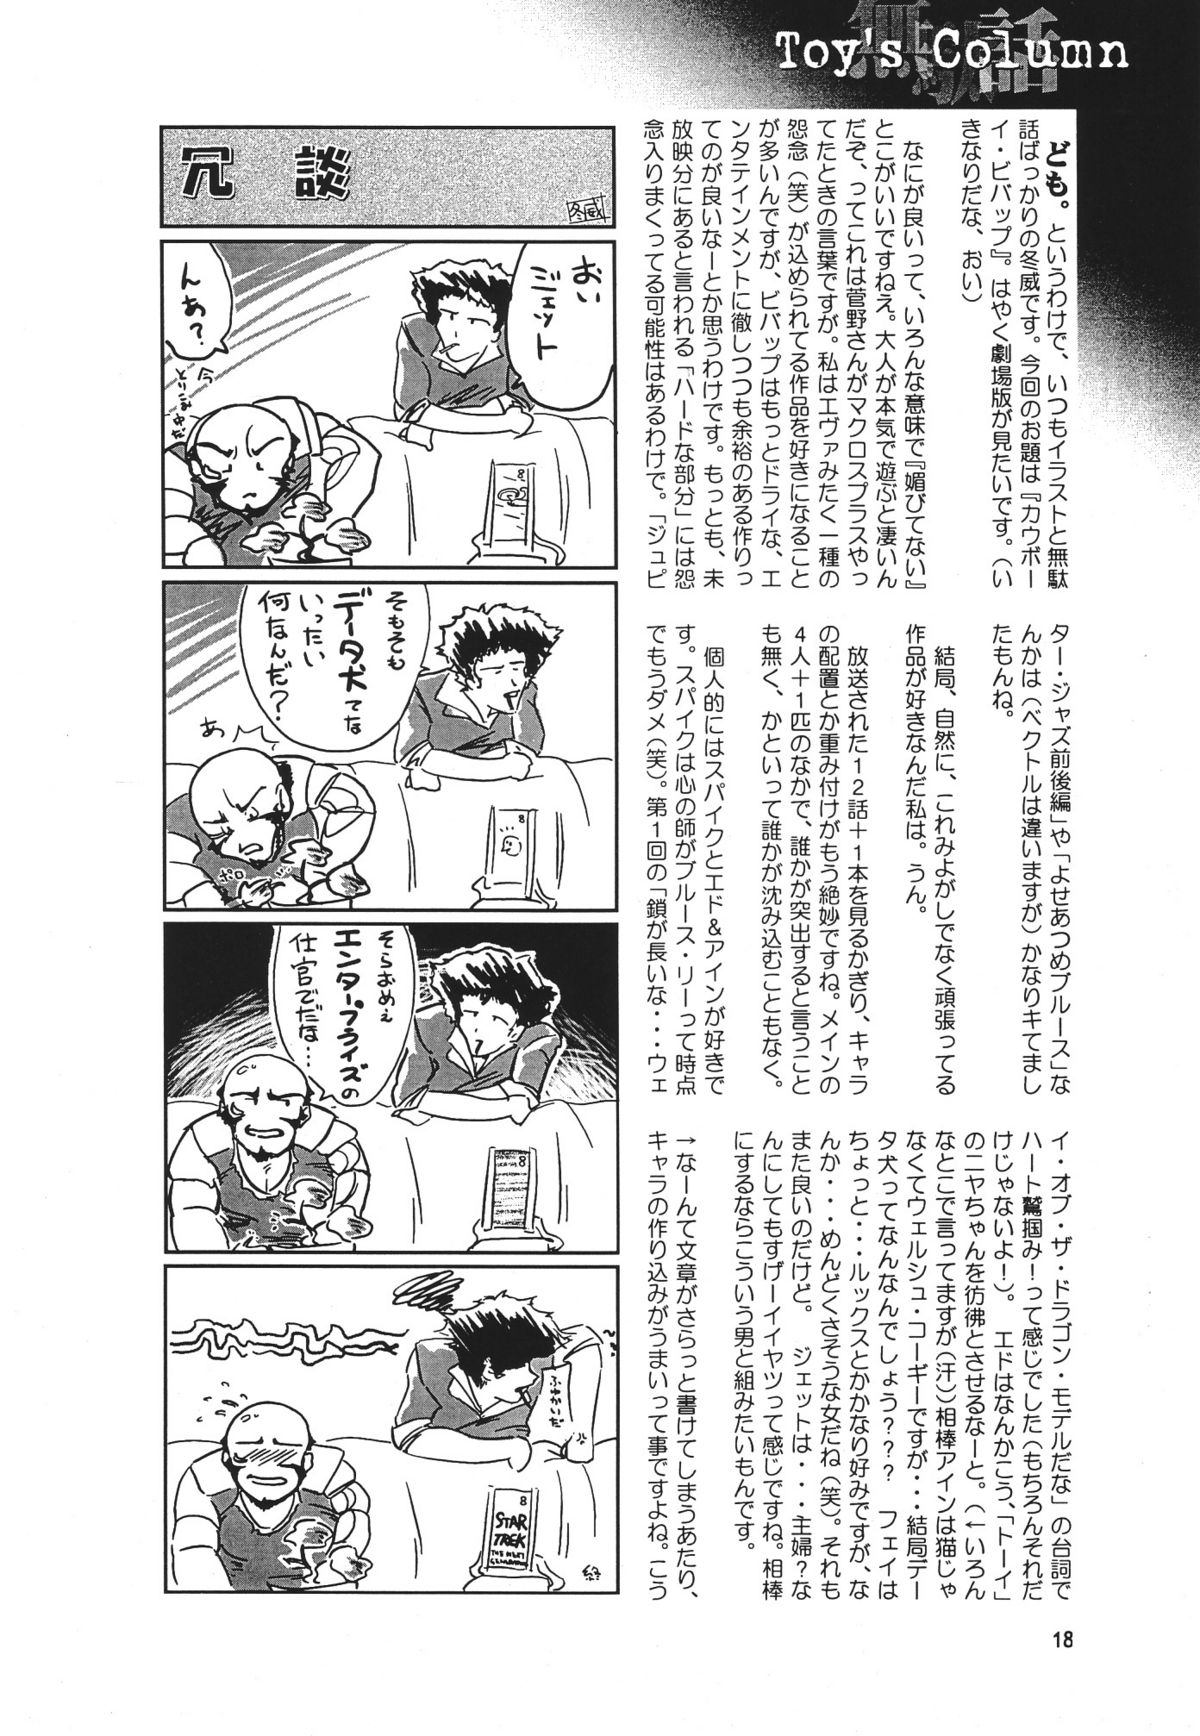 [Seishun No Nigirikobushi!] Favorite Visions 2 (Sailor Moon, AIKa) page 20 full